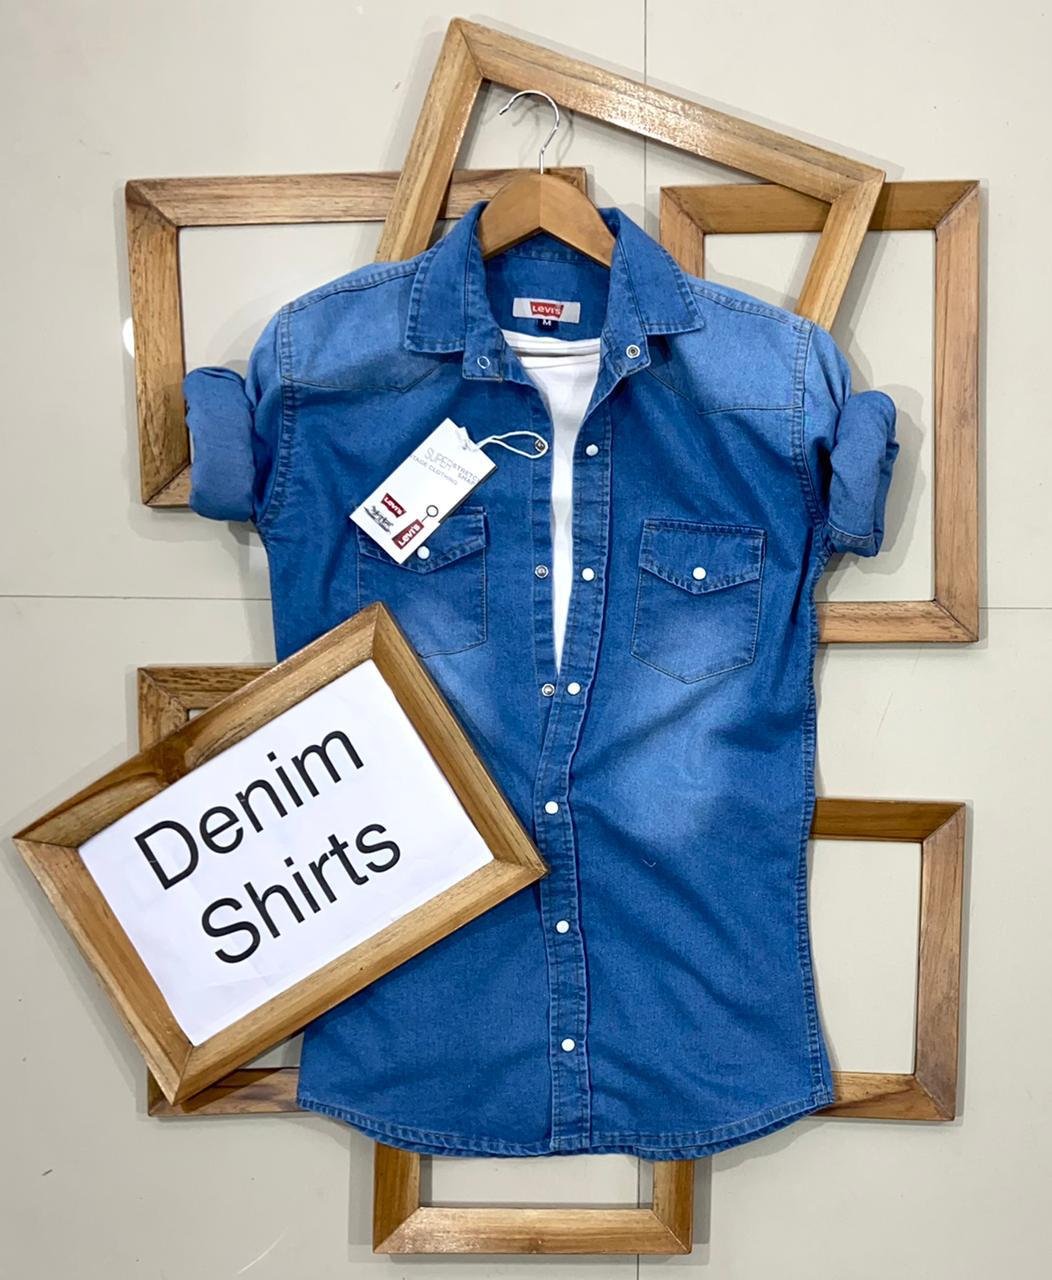 Buy Honganda Fashion Kids Toddler Baby Boy Girl Adjustable Sleeve Denim  Shirt Tops Blouse (Denim, 6-12 Months) at Amazon.in